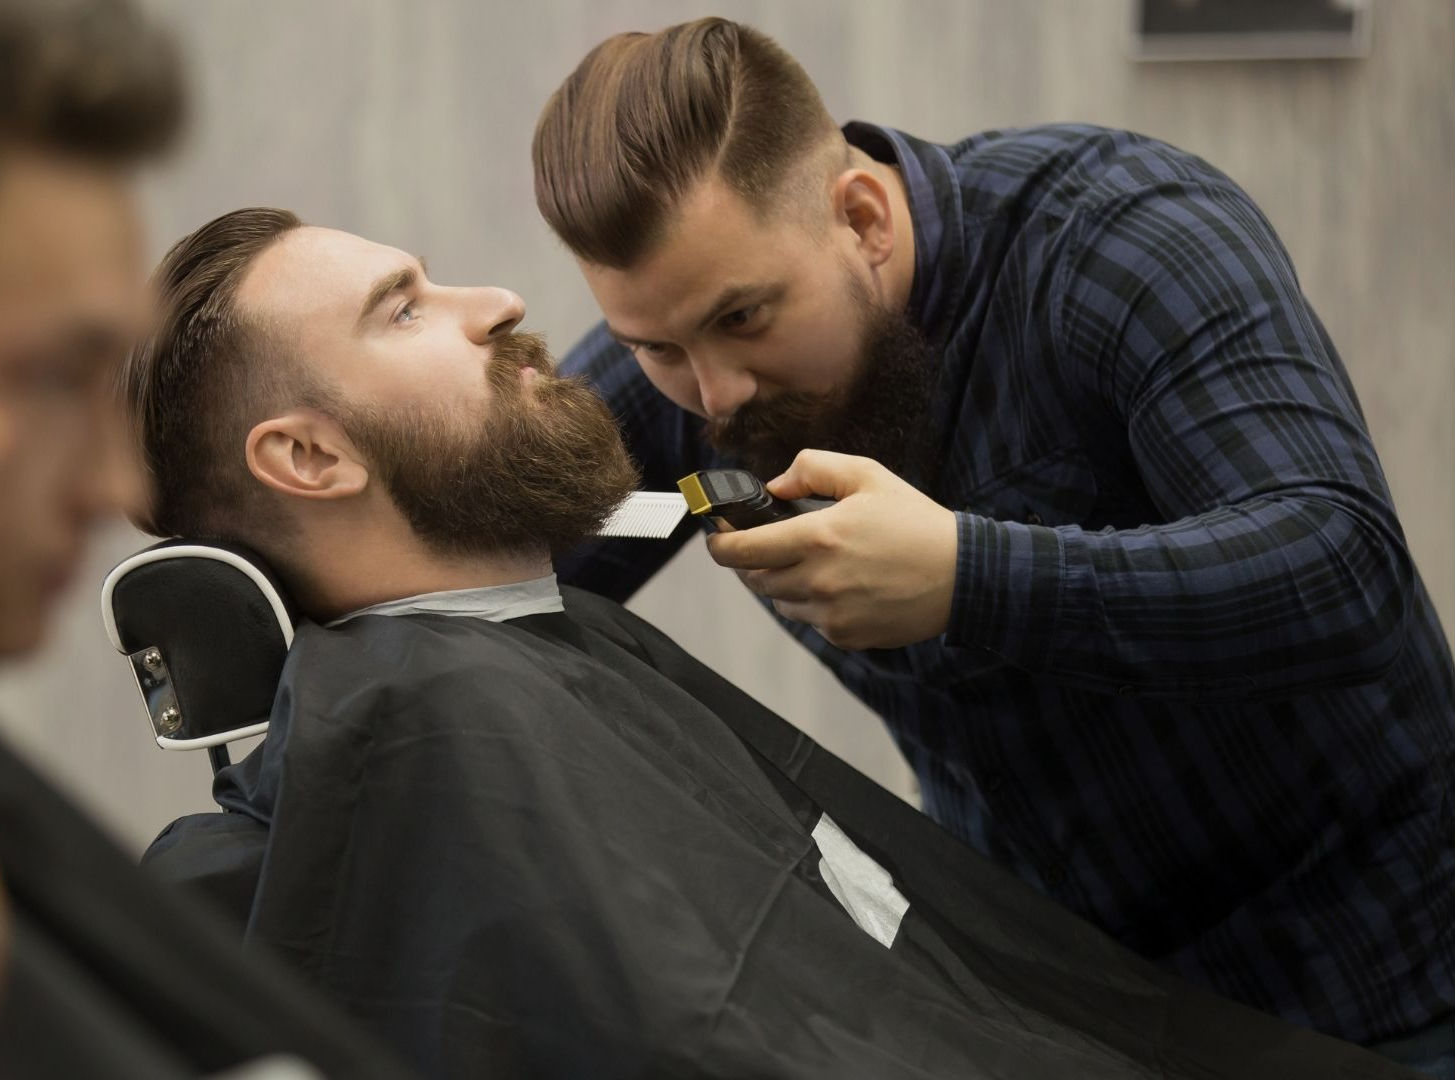 Coiffure homme - Expert Barbier : rasages et tailles de barbe